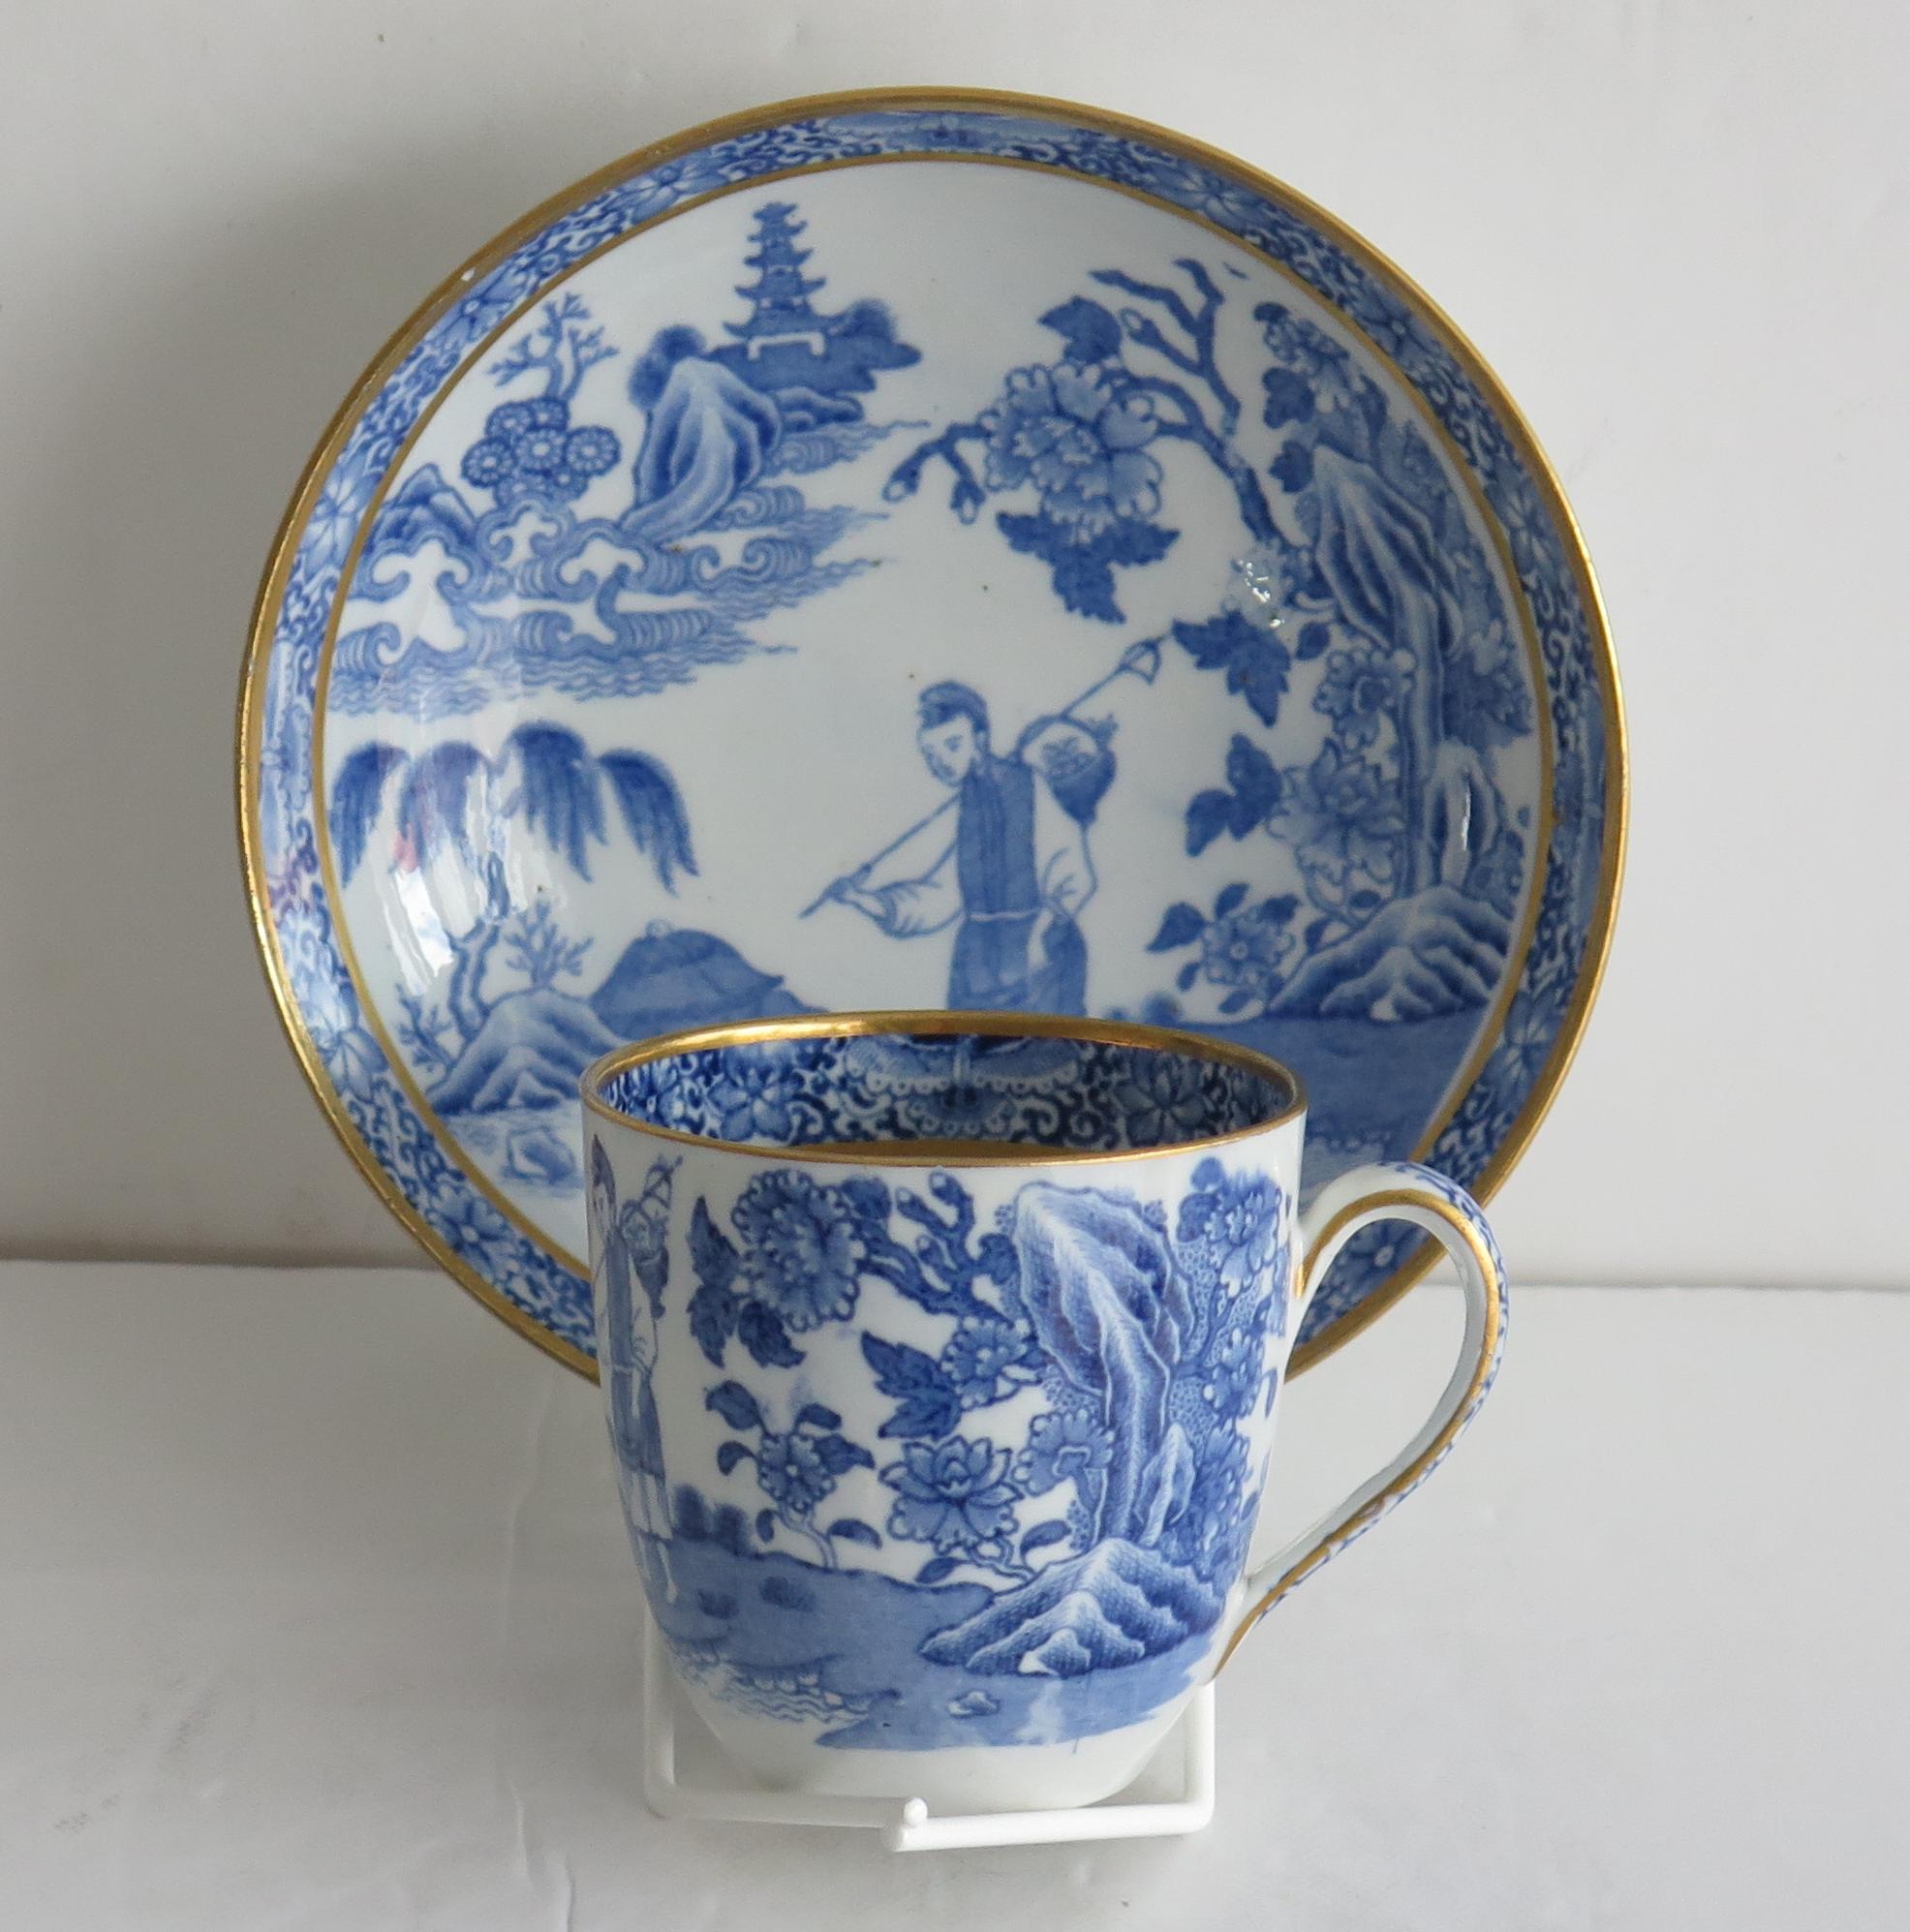 Il s'agit d'une tasse à café et d'une soucoupe rares The Traveller ou One Legged Duck, imprimée en bleu transfert et dorée à la main par John Turner & famille, de Lane End, Longton, Staffordshire. 

Les deux pièces sont bien décorées d'un motif